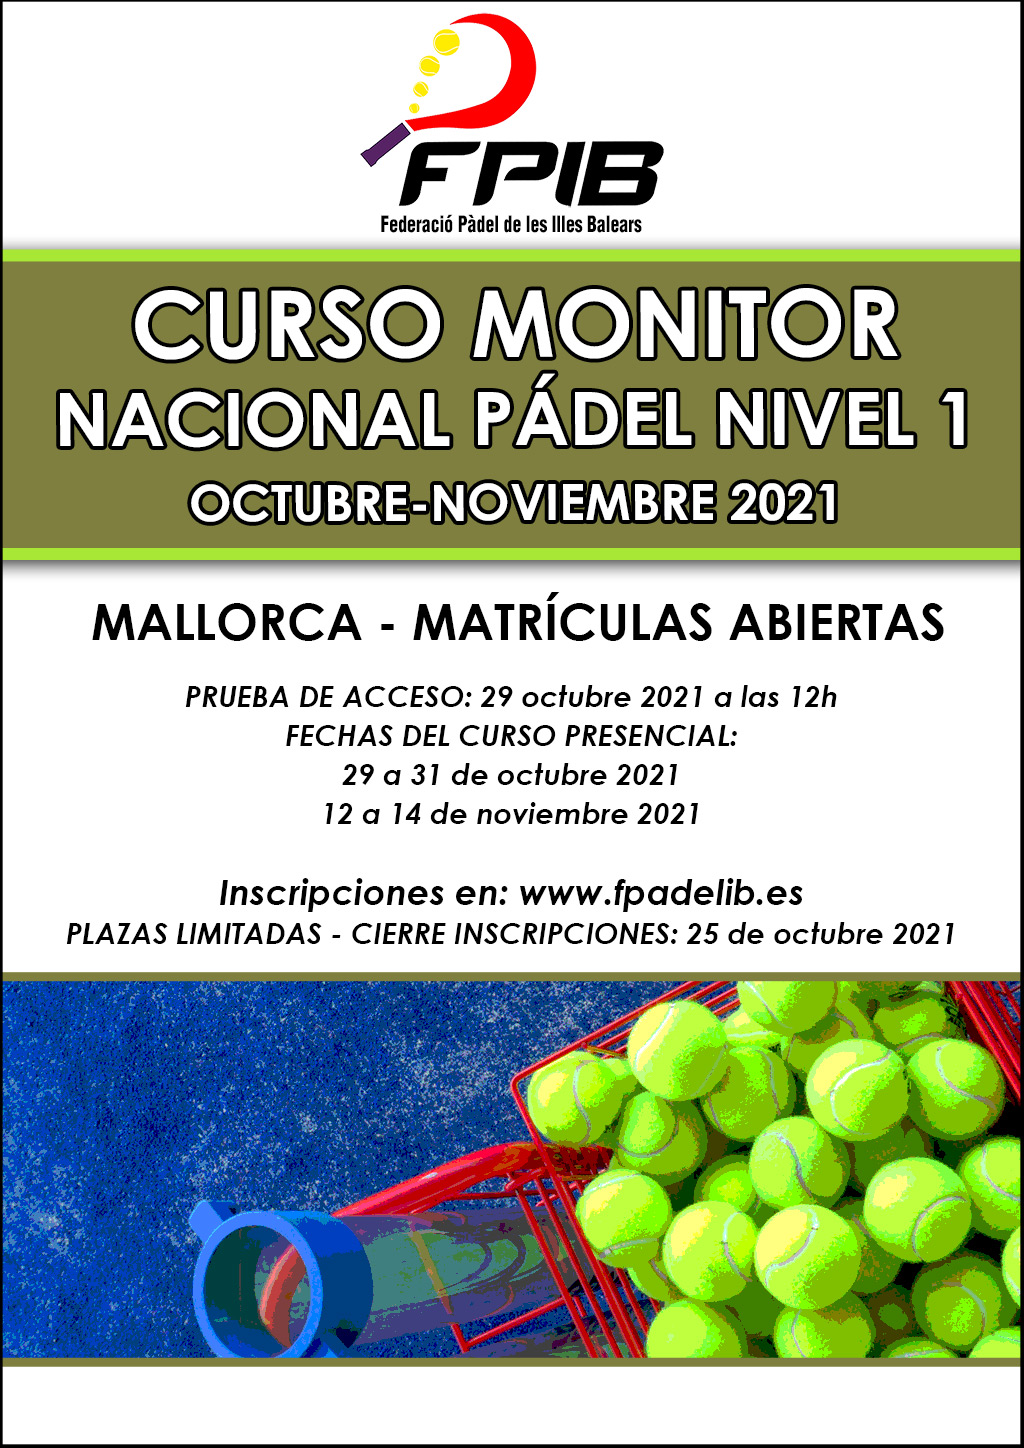 2021 Curso monitor Mallorca octubre